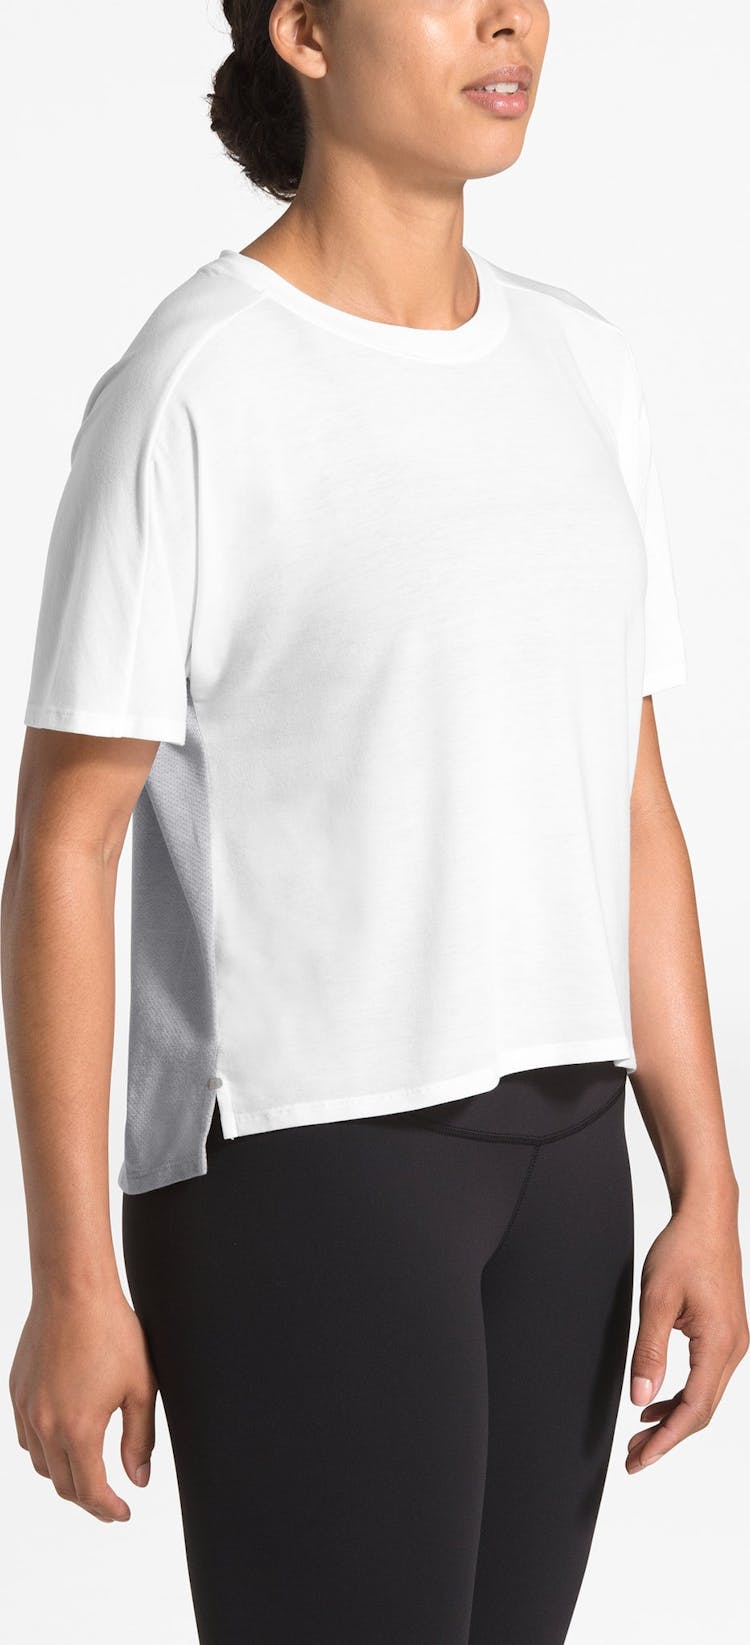 Numéro de l'image de la galerie de produits 2 pour le produit T-Shirt Workout Novelty - Femme